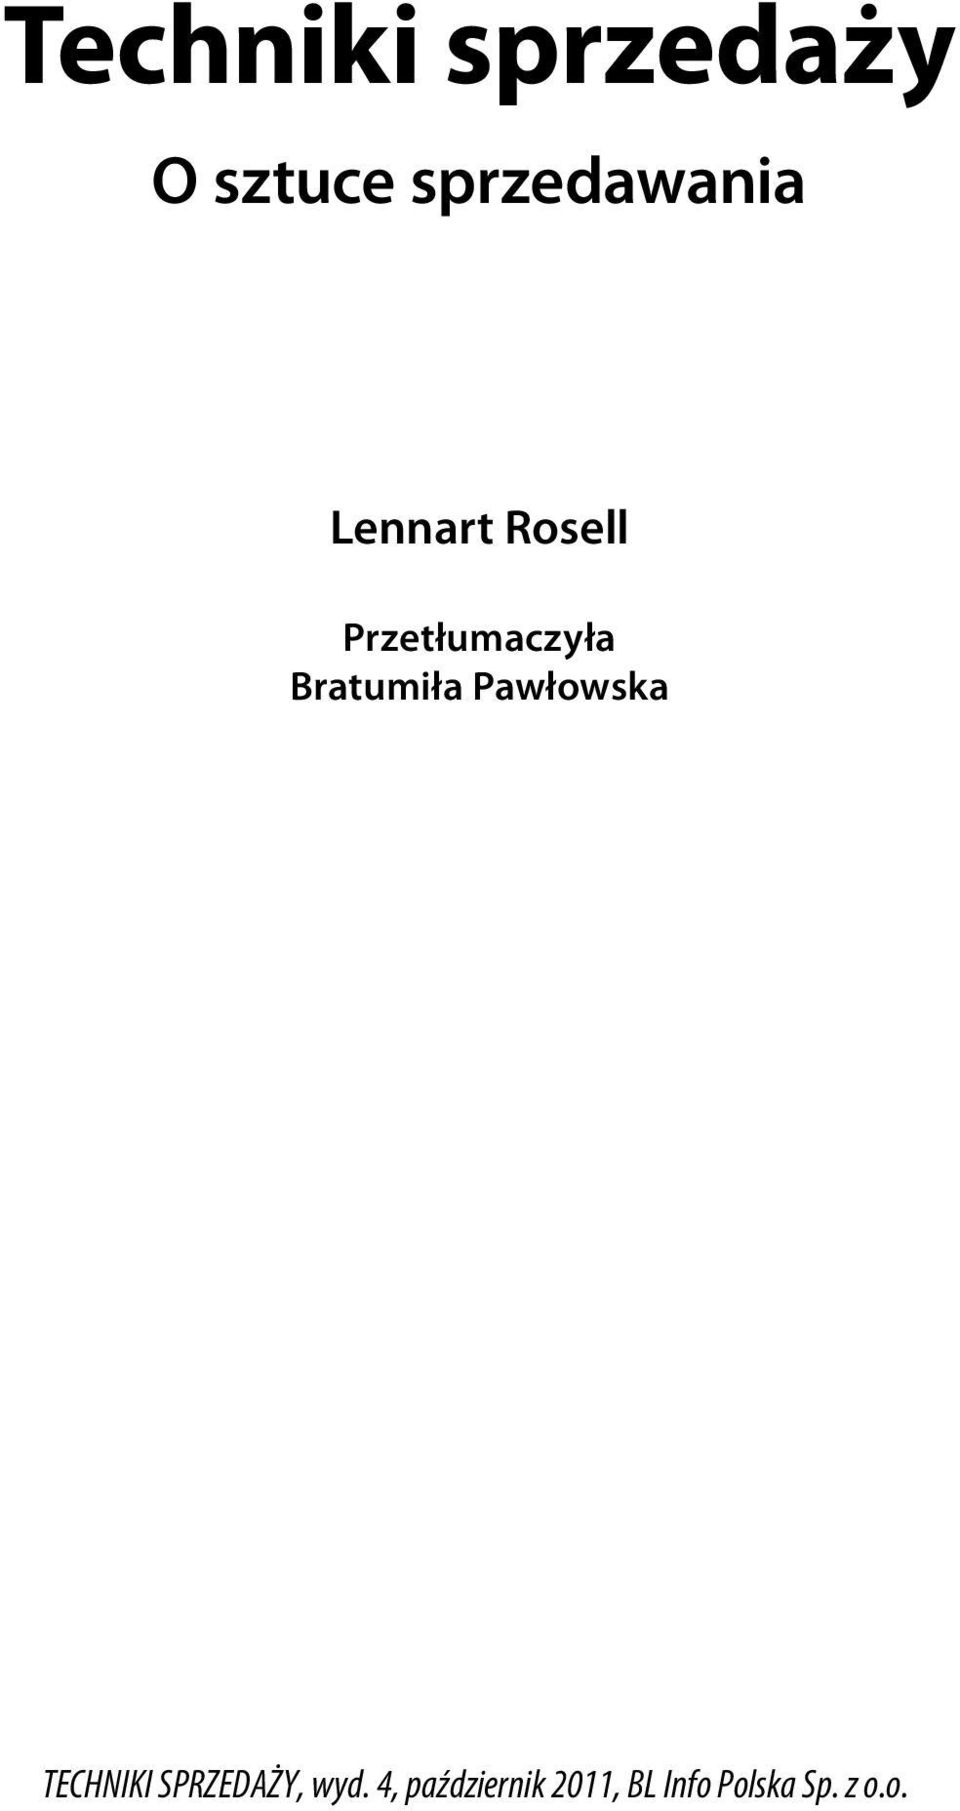 Lennart Rosell